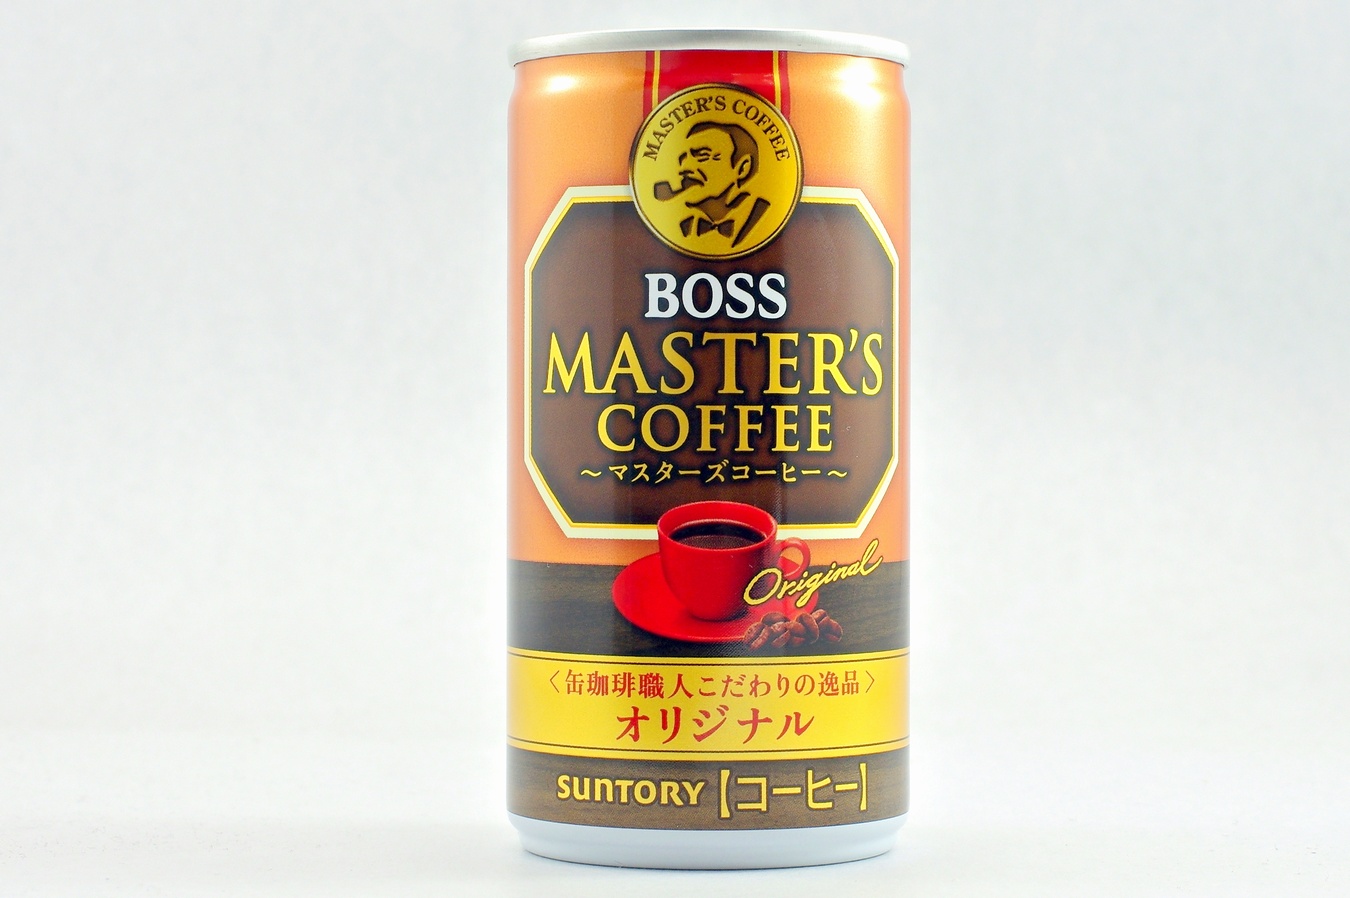 BOSS マスターズコーヒー オリジナル 2015年3月